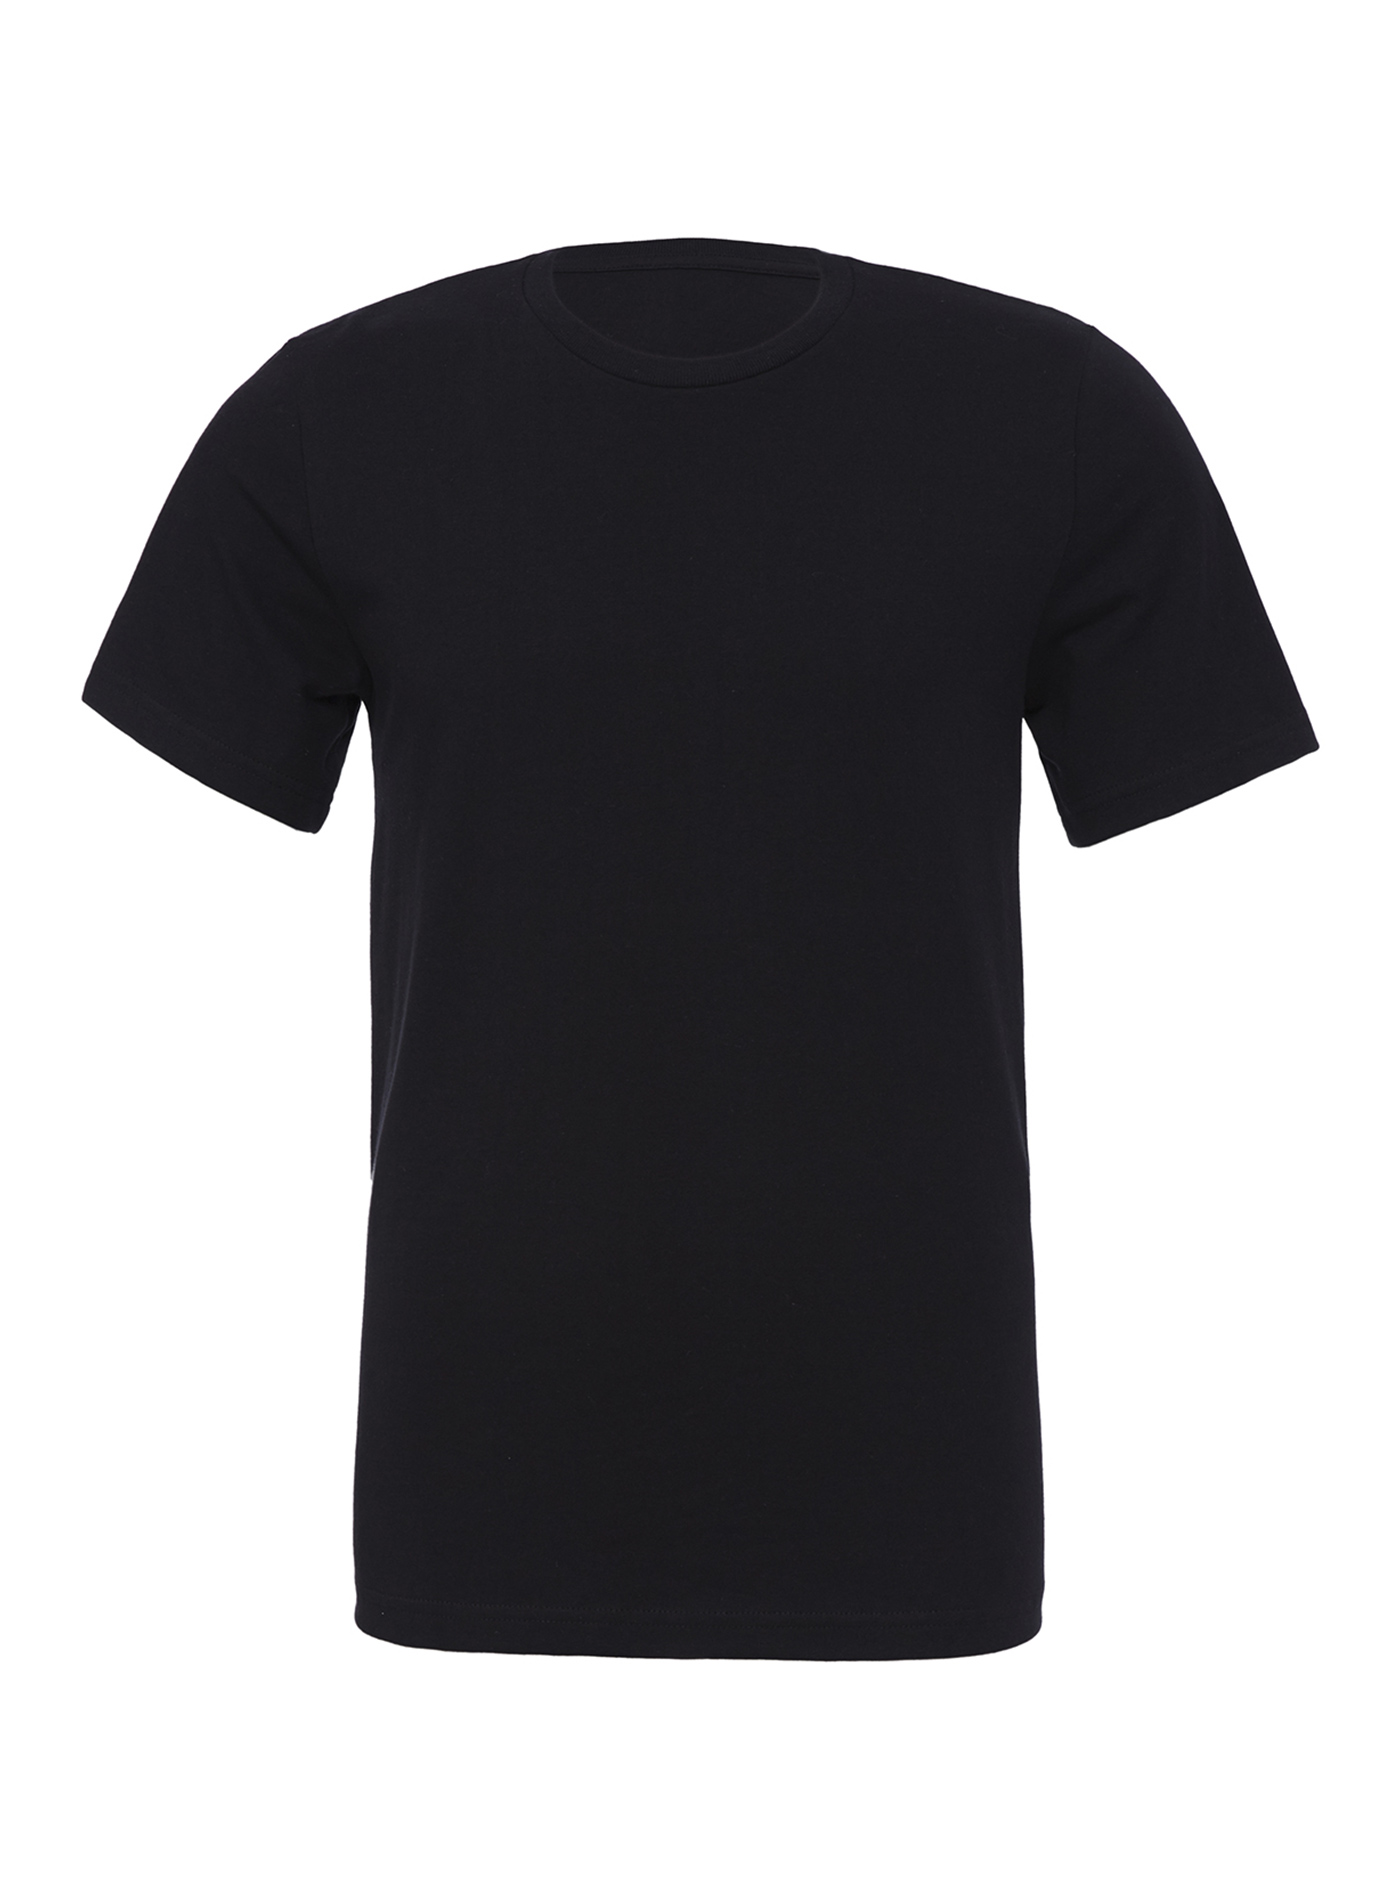 Unisex tričko Bella + Canvas Jersey - černá S